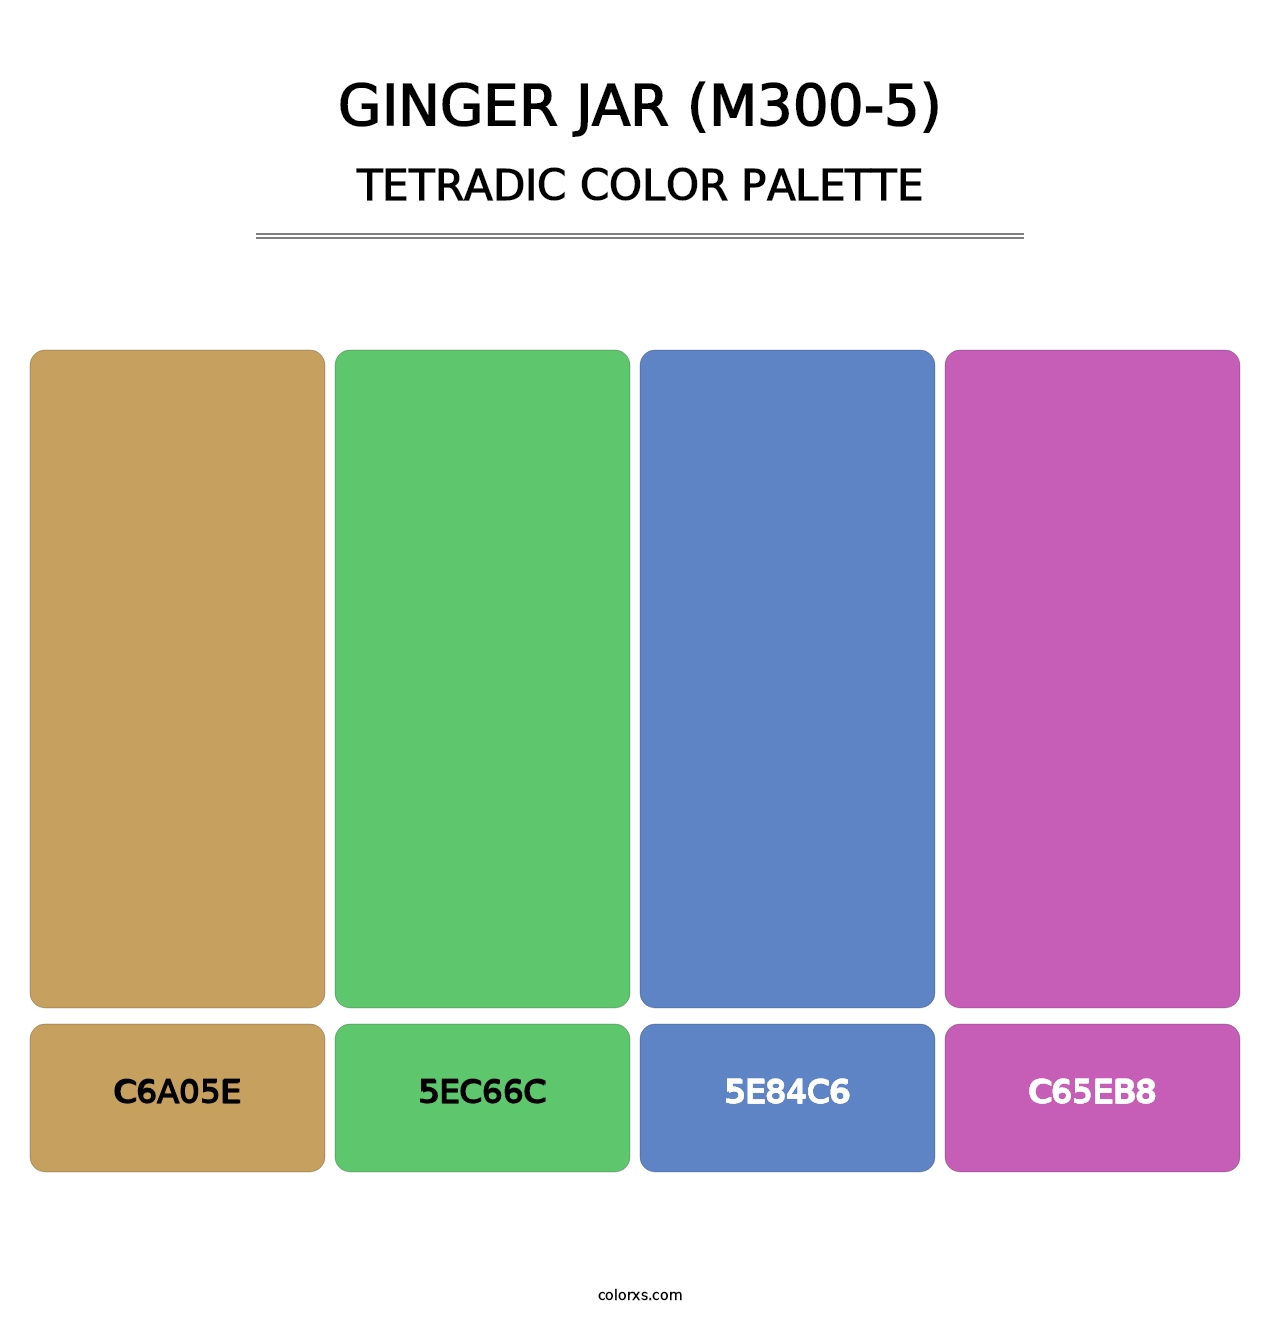 Ginger Jar (M300-5) - Tetradic Color Palette